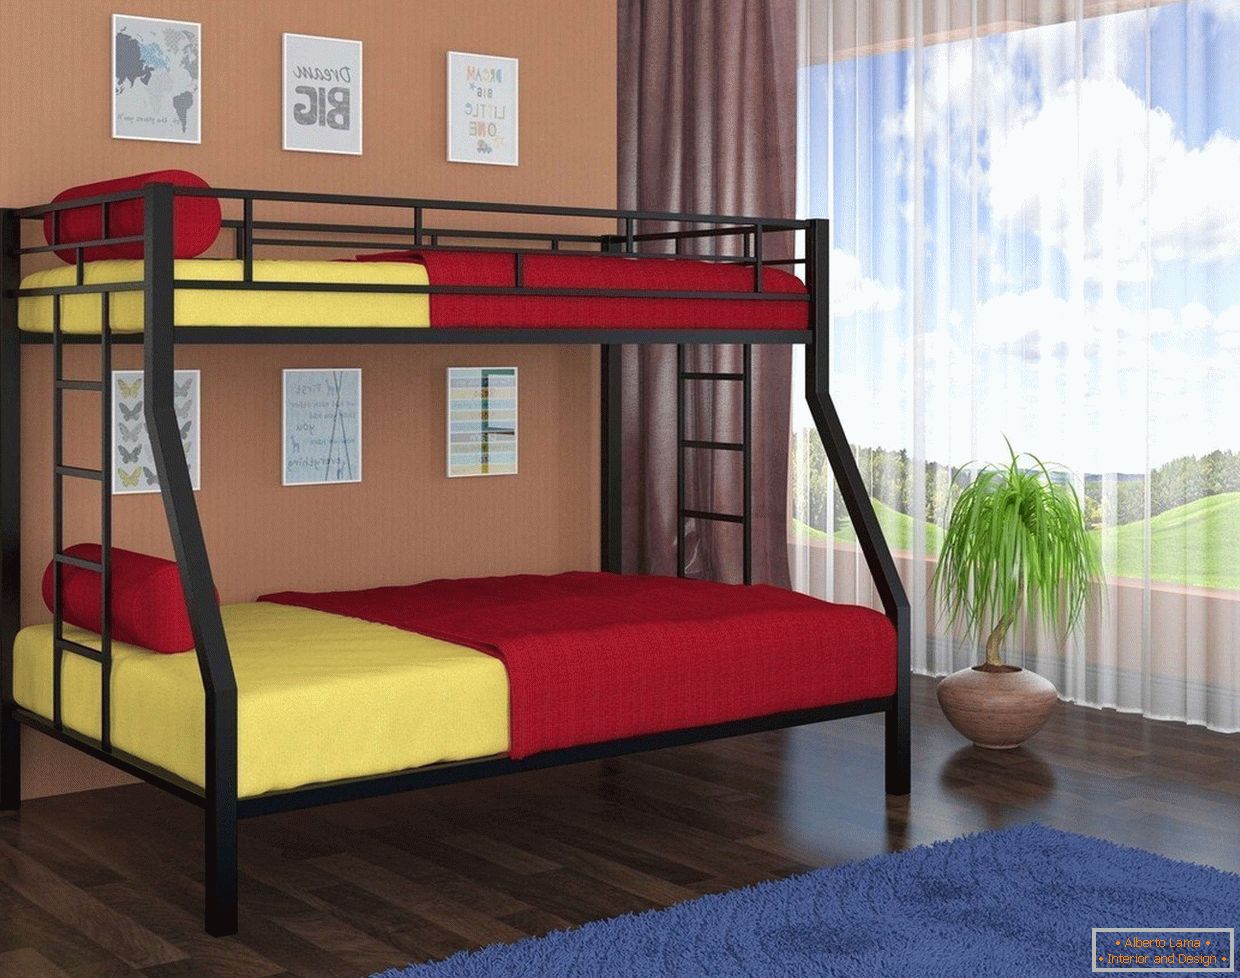 Linge de lit jaune et rouge dans un lit superposé